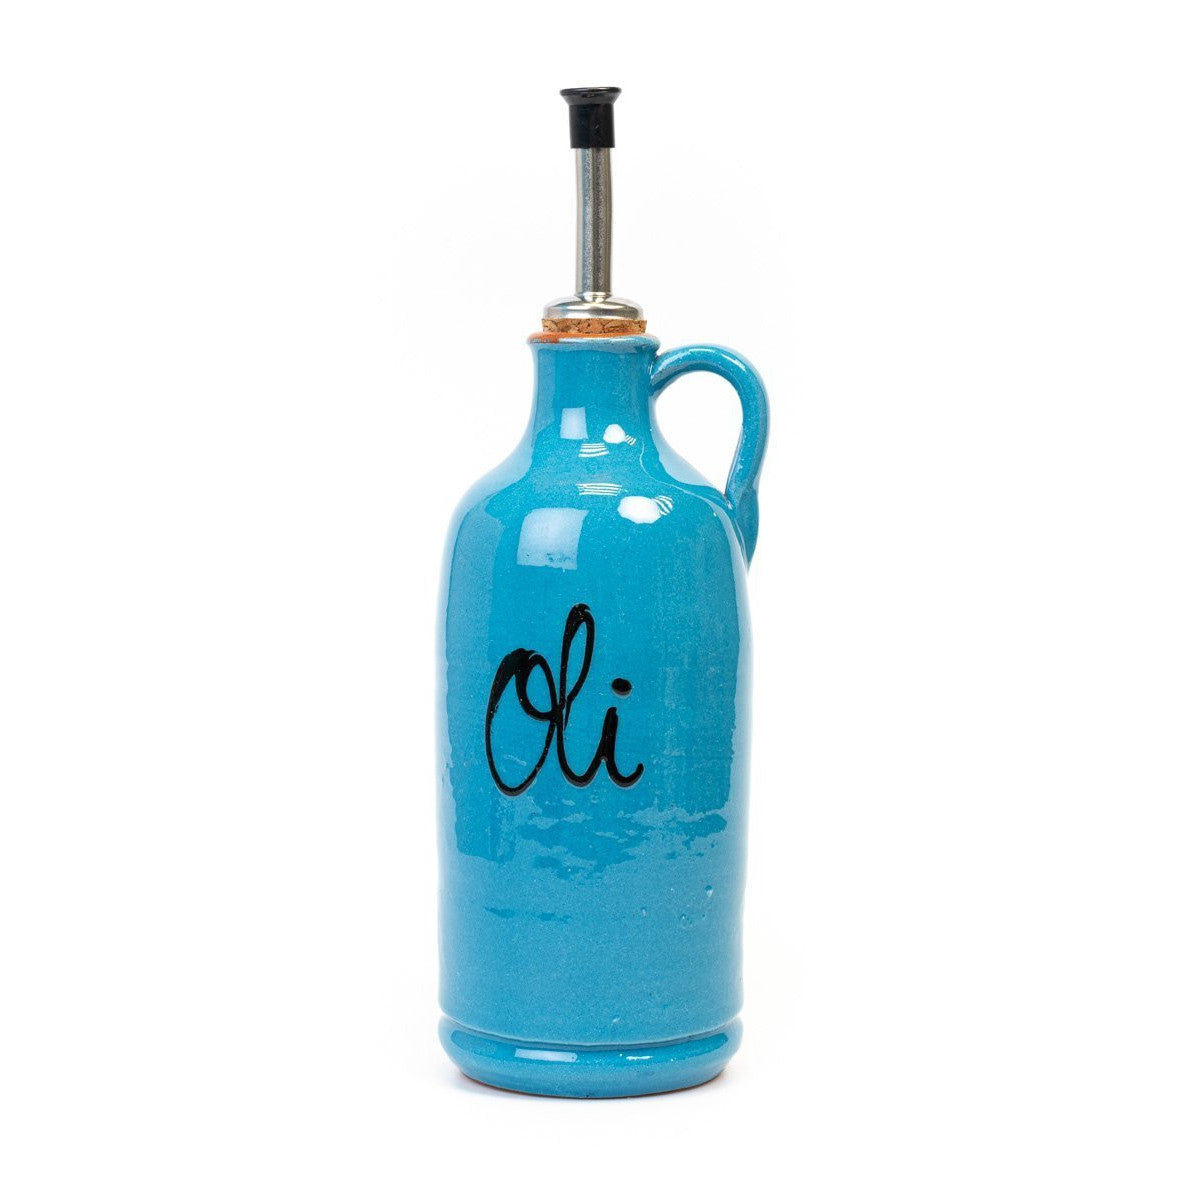 OIivenöl Flasche zum befüllen - volllasiert und lackiert blau (22cm) - Gourmet Markt